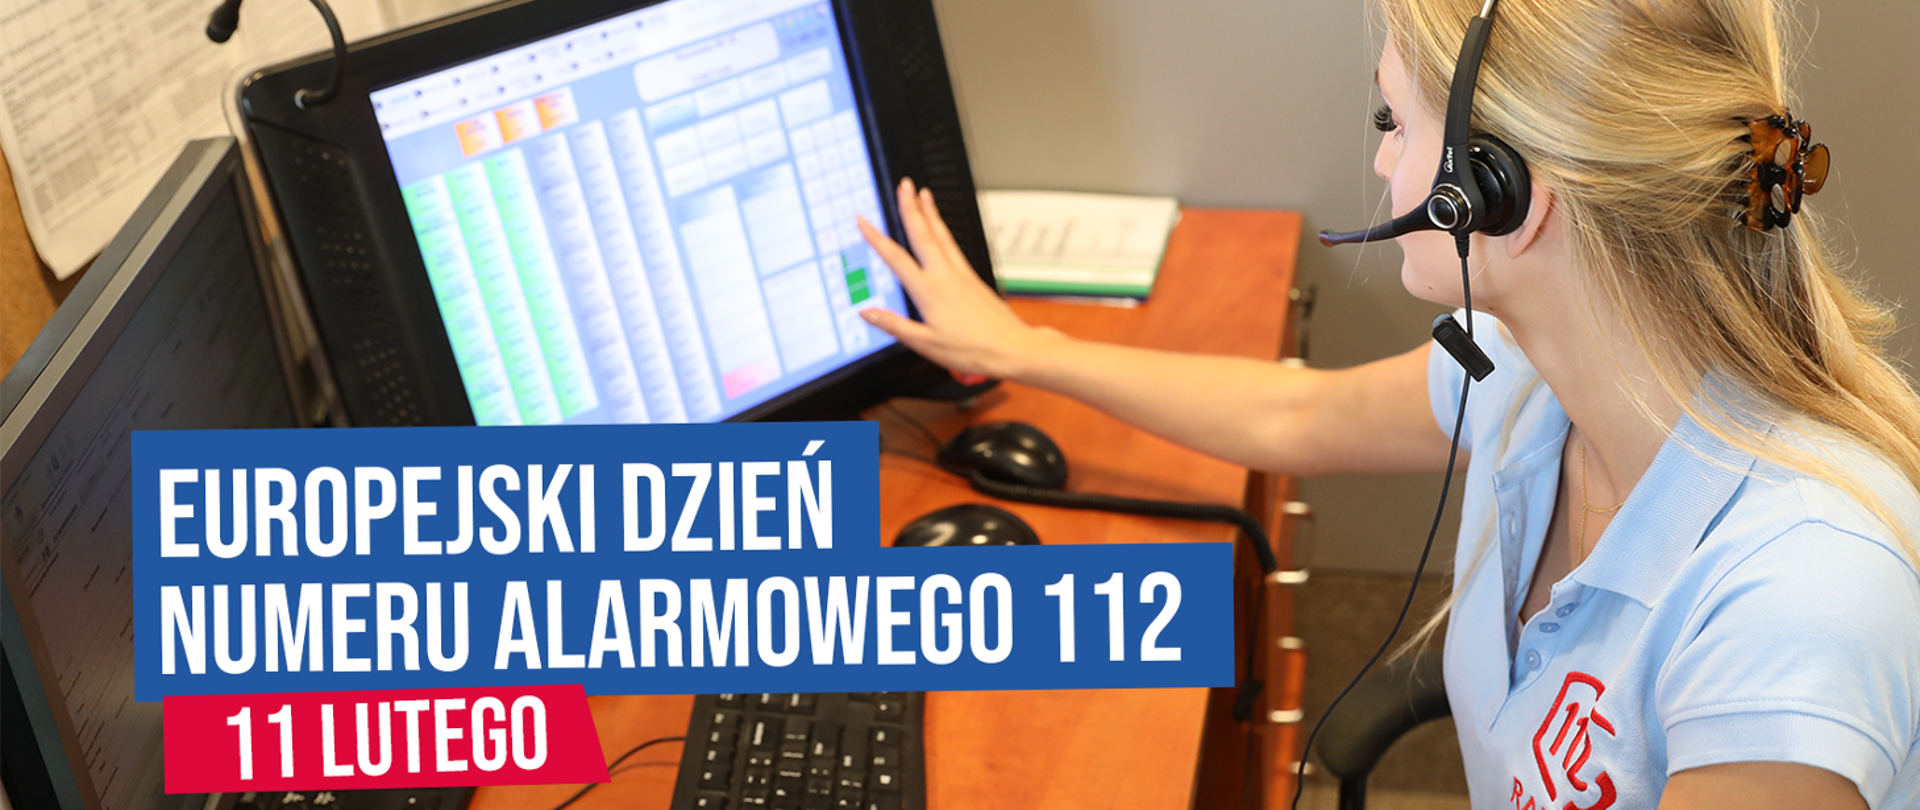 Kobieta operator numerów alarmowych siedzi przy biurku ze słuchawkami na głowie i wprowadza dane do systemu na dotykowym monitorze, pod spodem na niebieskim tle biały napis Europejski Dzień Numeru Alarmowego 112, poniżej na czerwonym tle biały napis 11 lutego